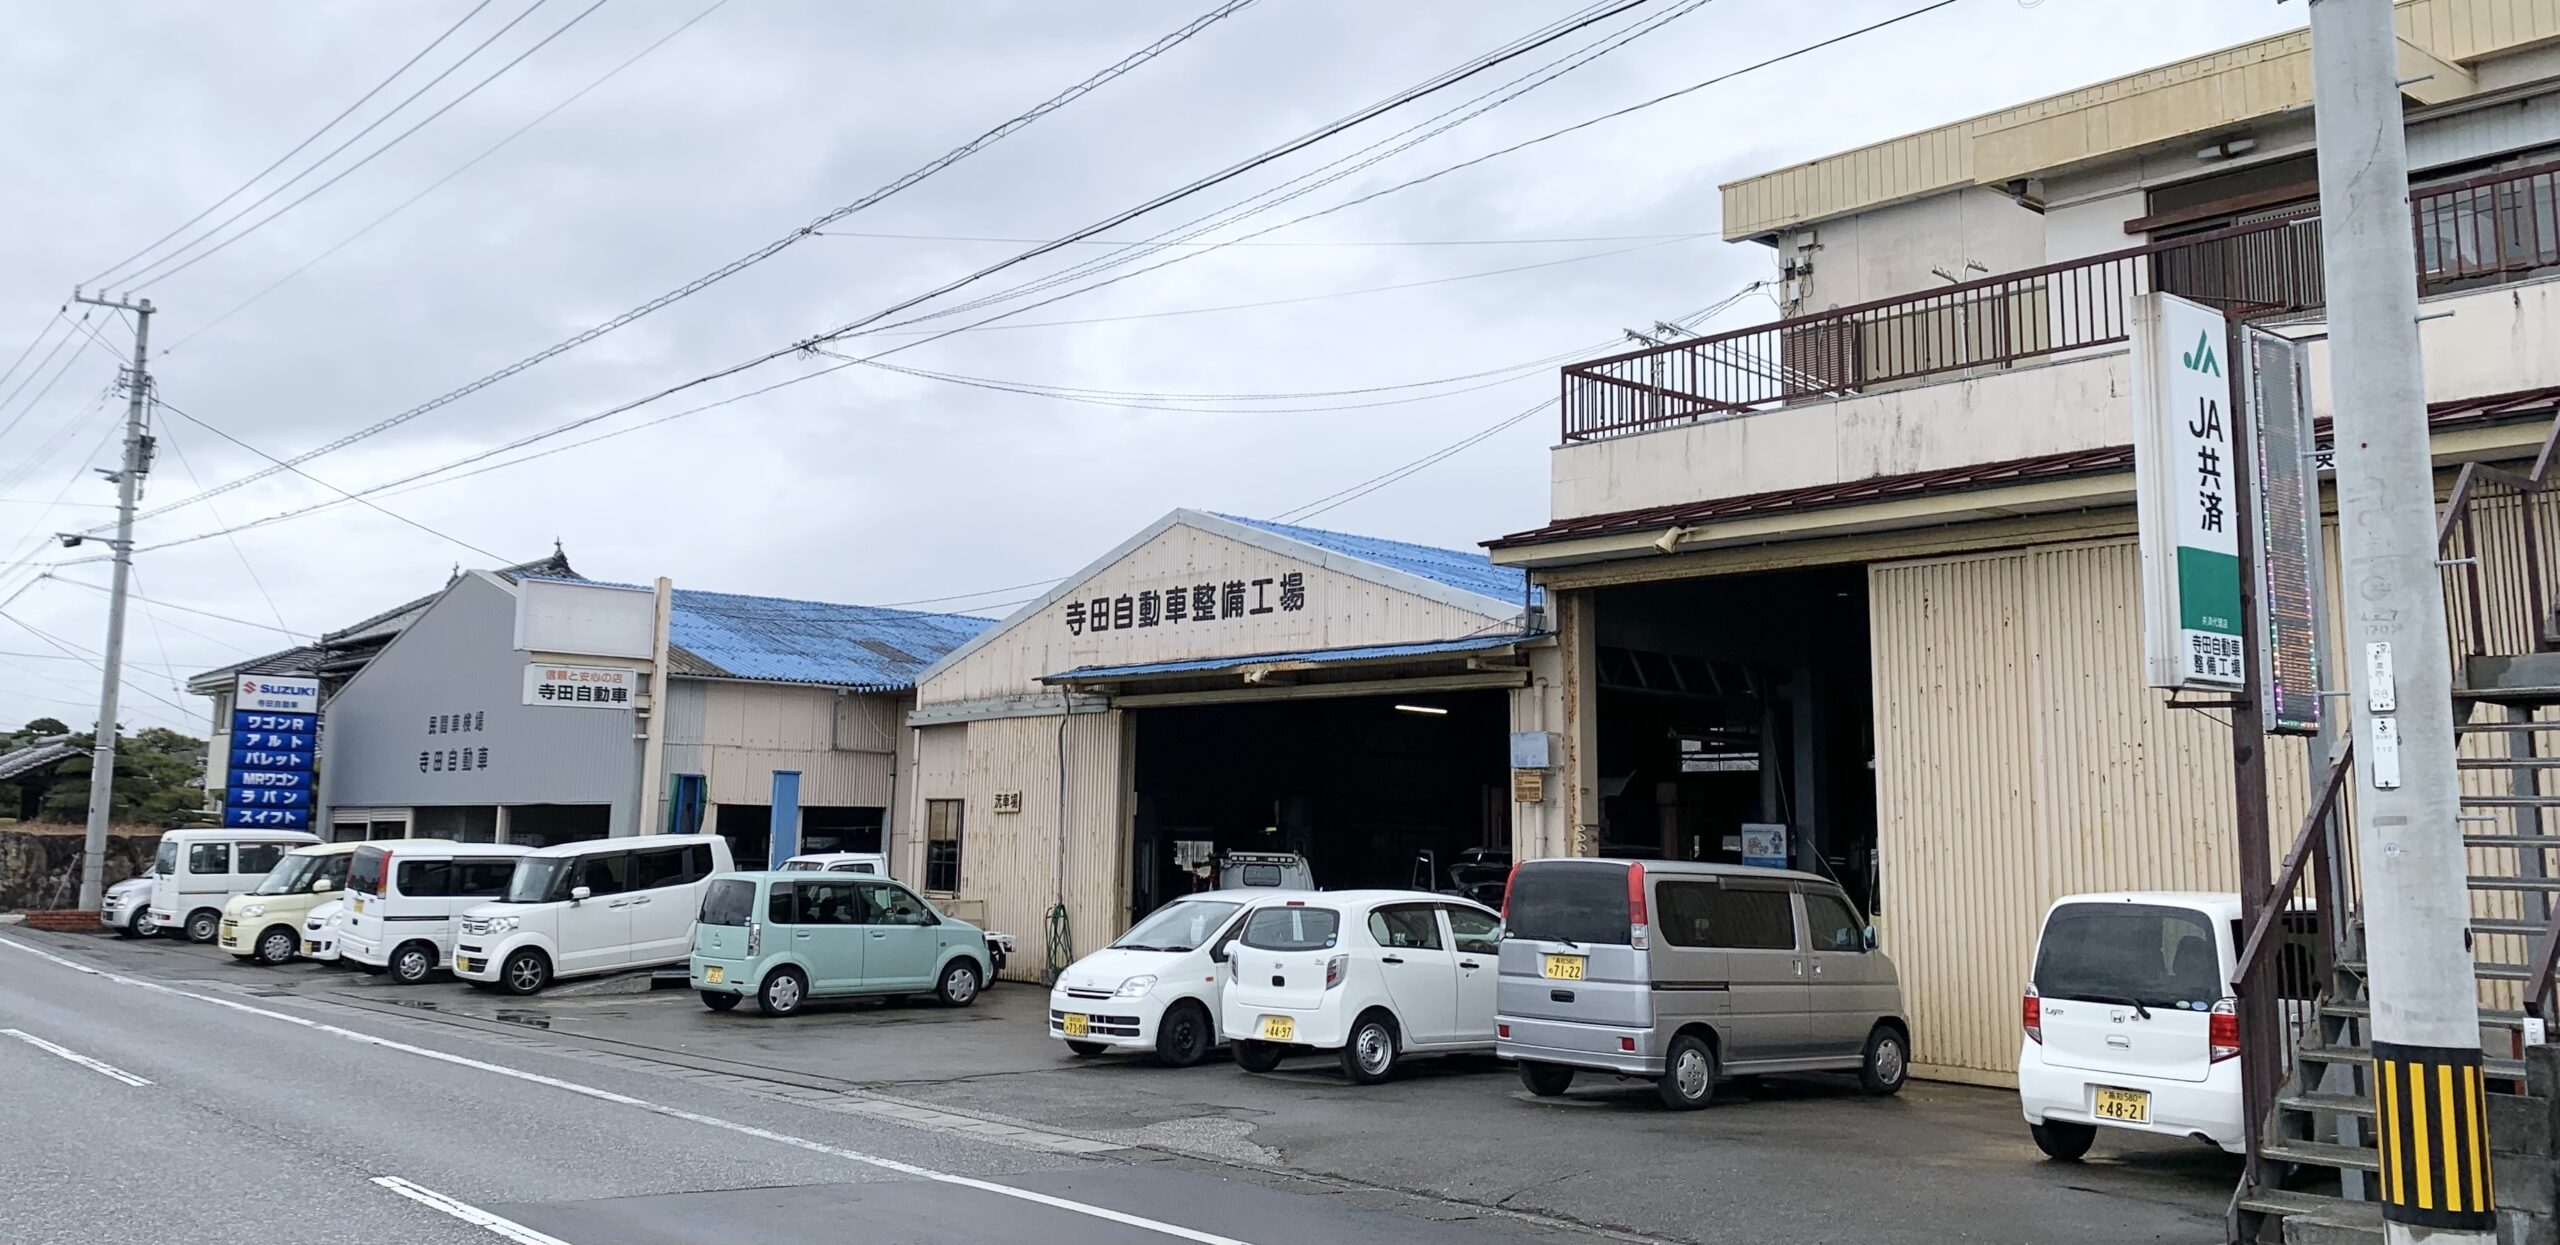 寺田自動車整備工場